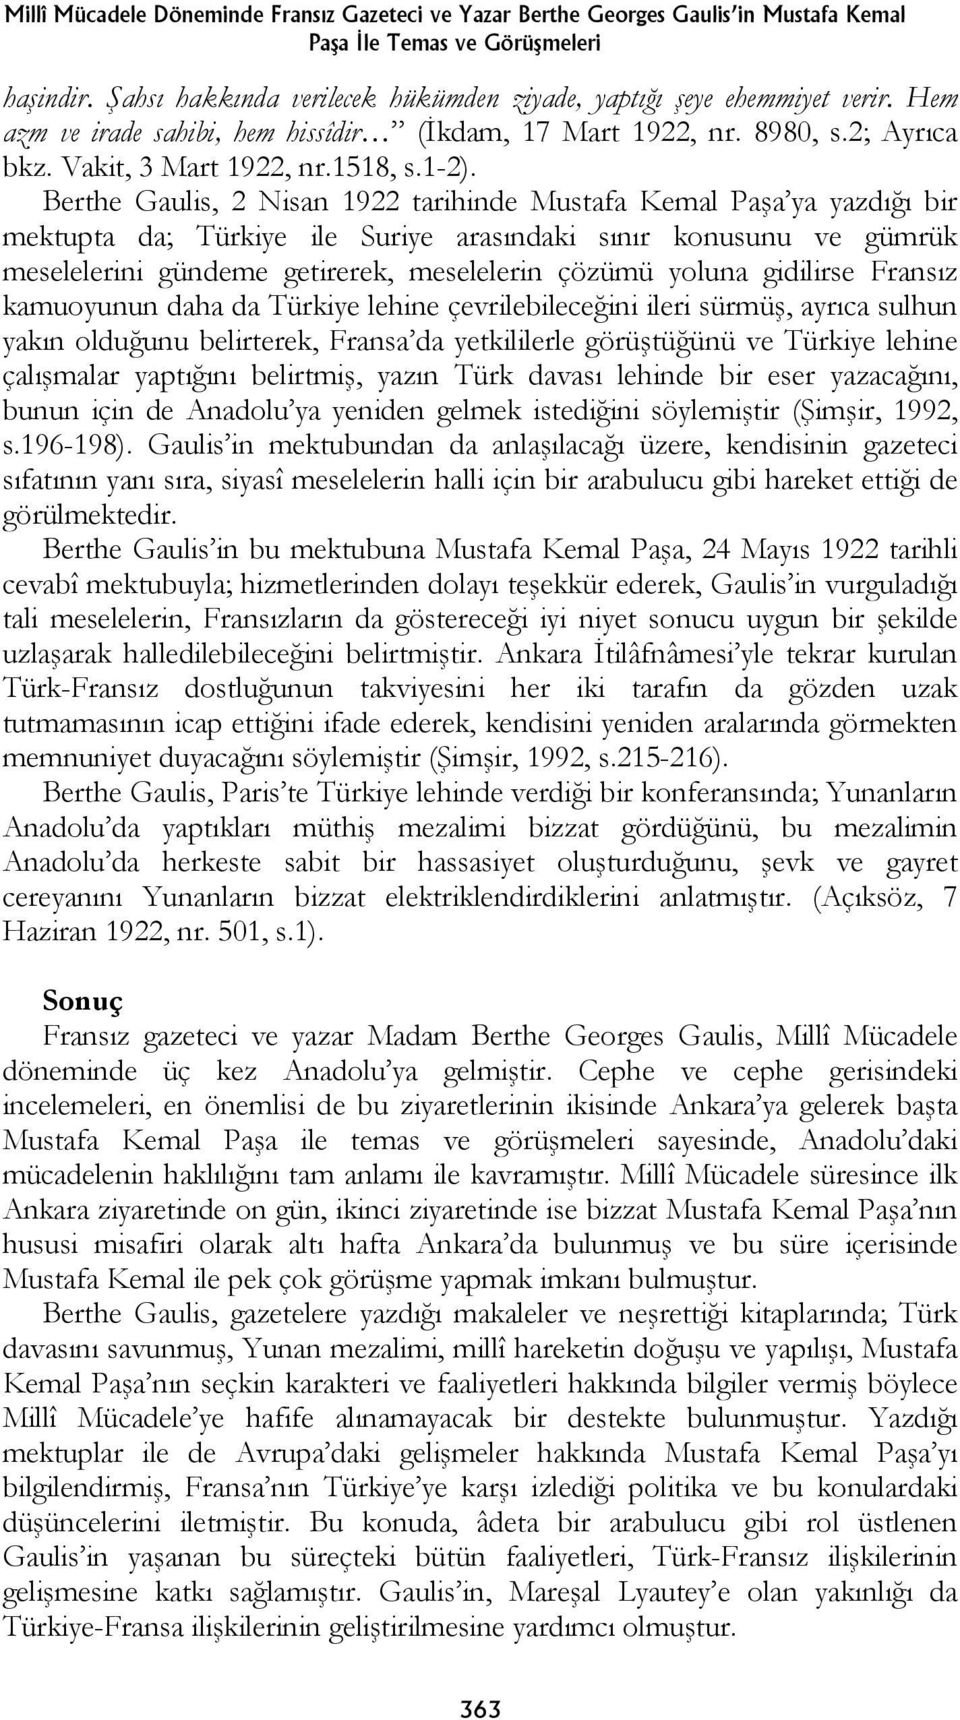 Berthe Gaulis, 2 Nisan 1922 tarihinde Mustafa Kemal Paşa ya yazdığı bir mektupta da; Türkiye ile Suriye arasındaki sınır konusunu ve gümrük meselelerini gündeme getirerek, meselelerin çözümü yoluna